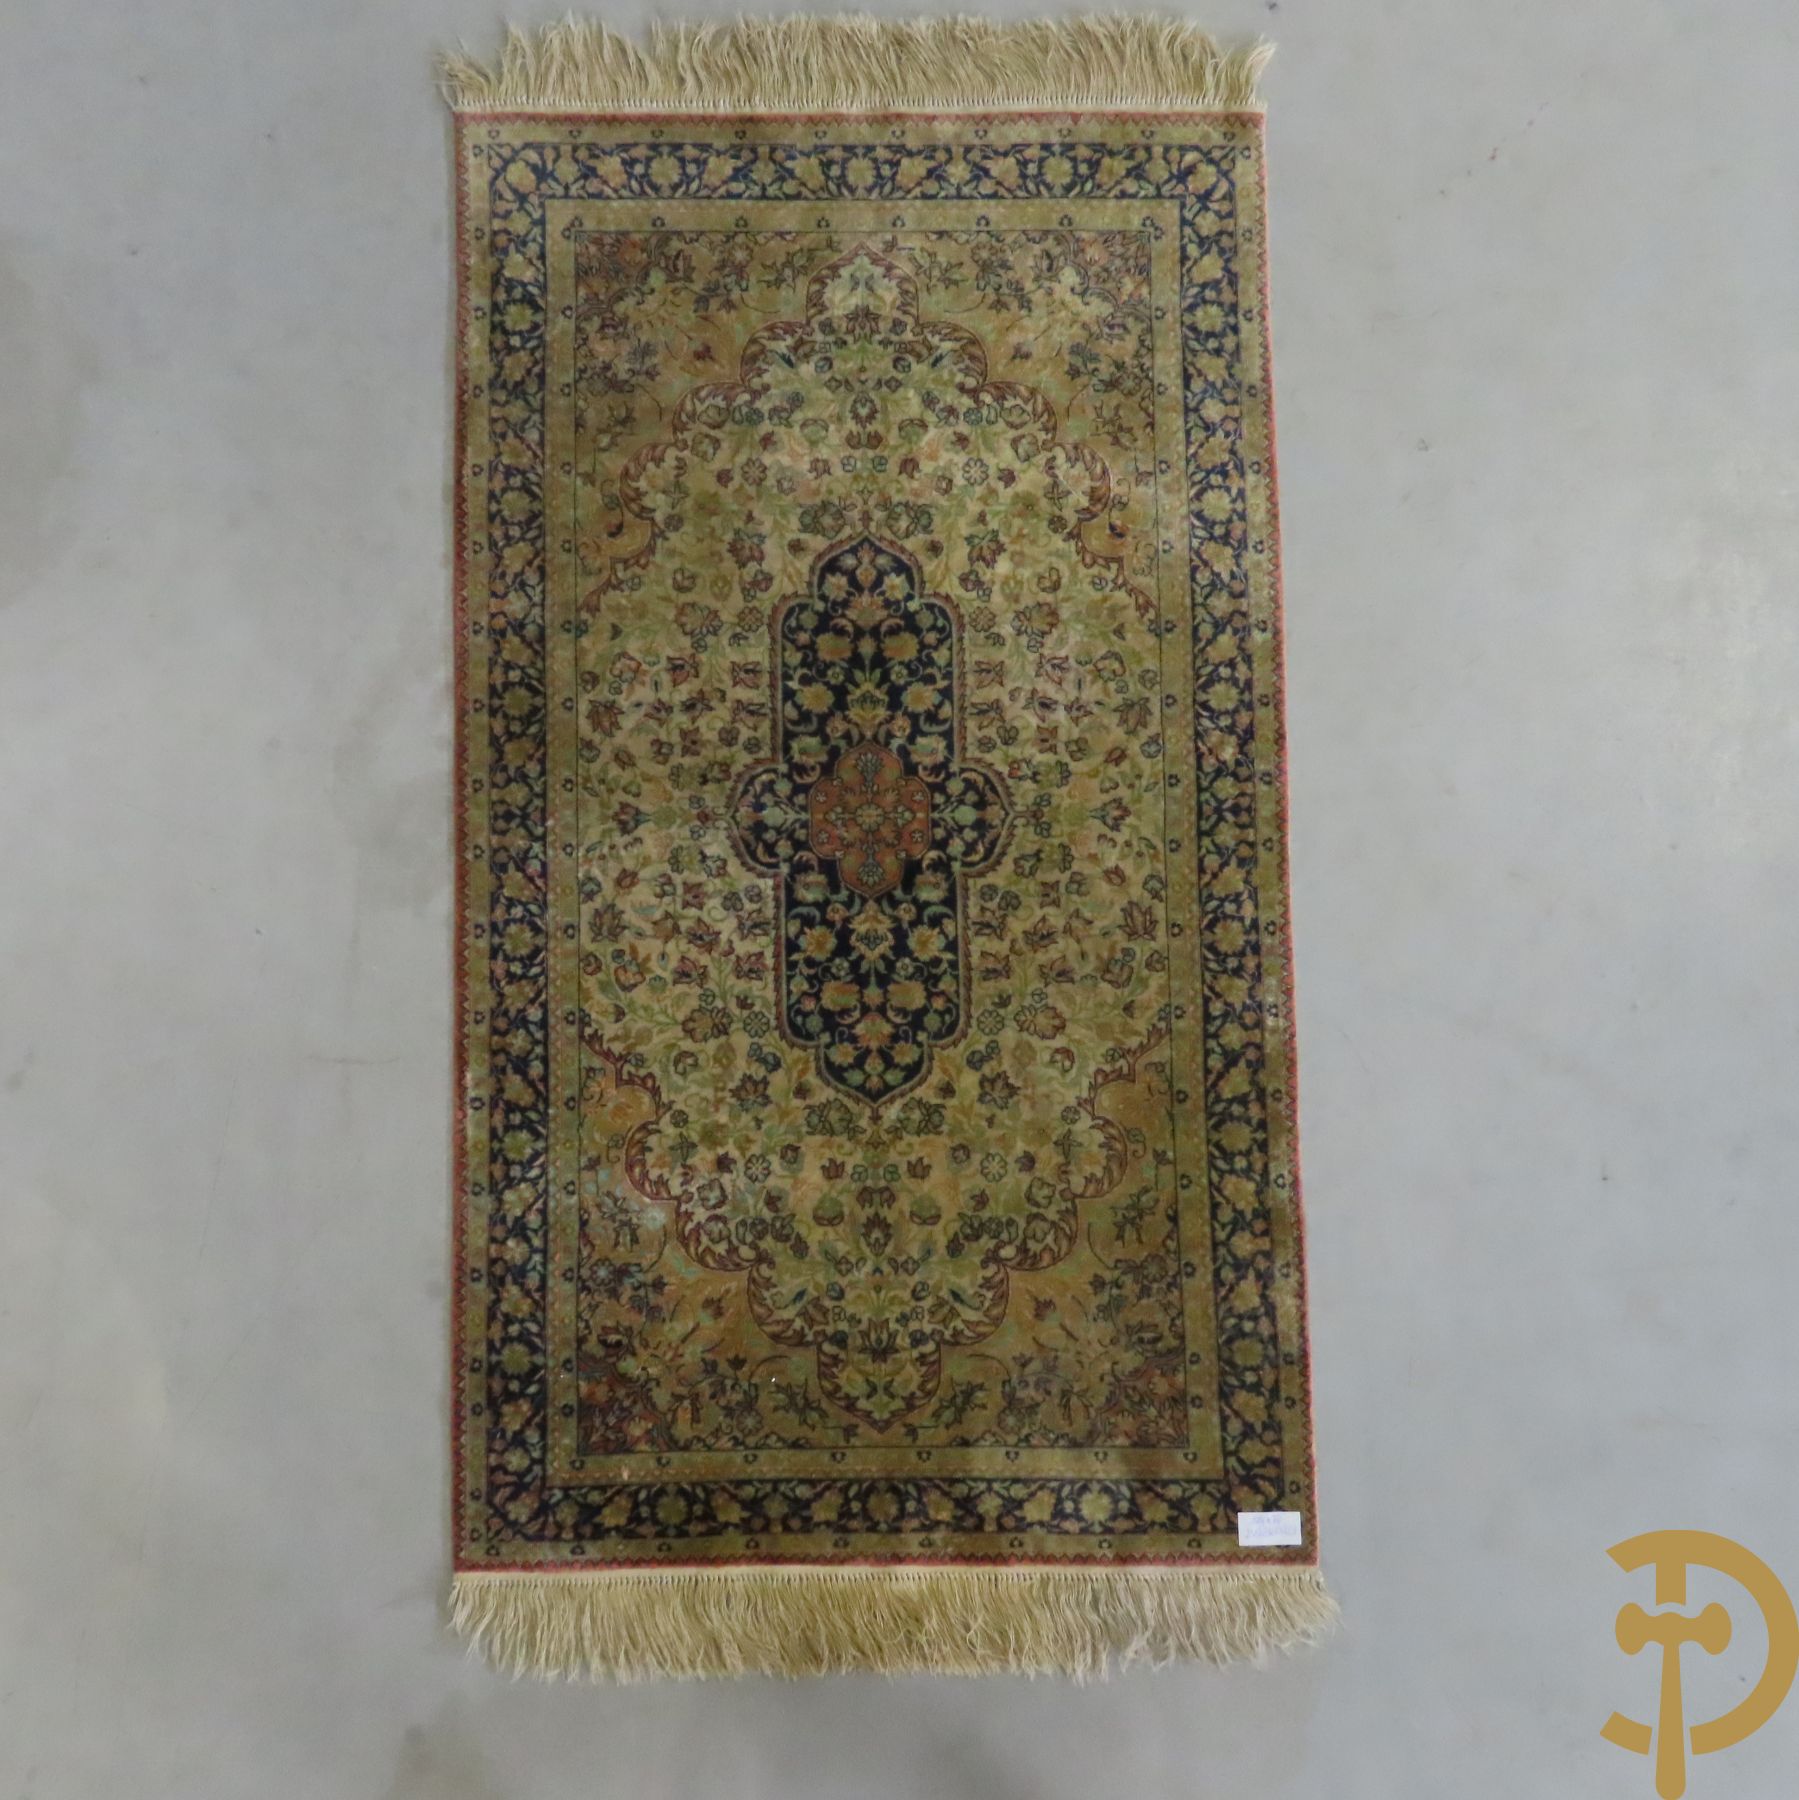 Oosters handgeknoopt zijden tapijt met centraal medaillon omgeven door bloemenpatronen